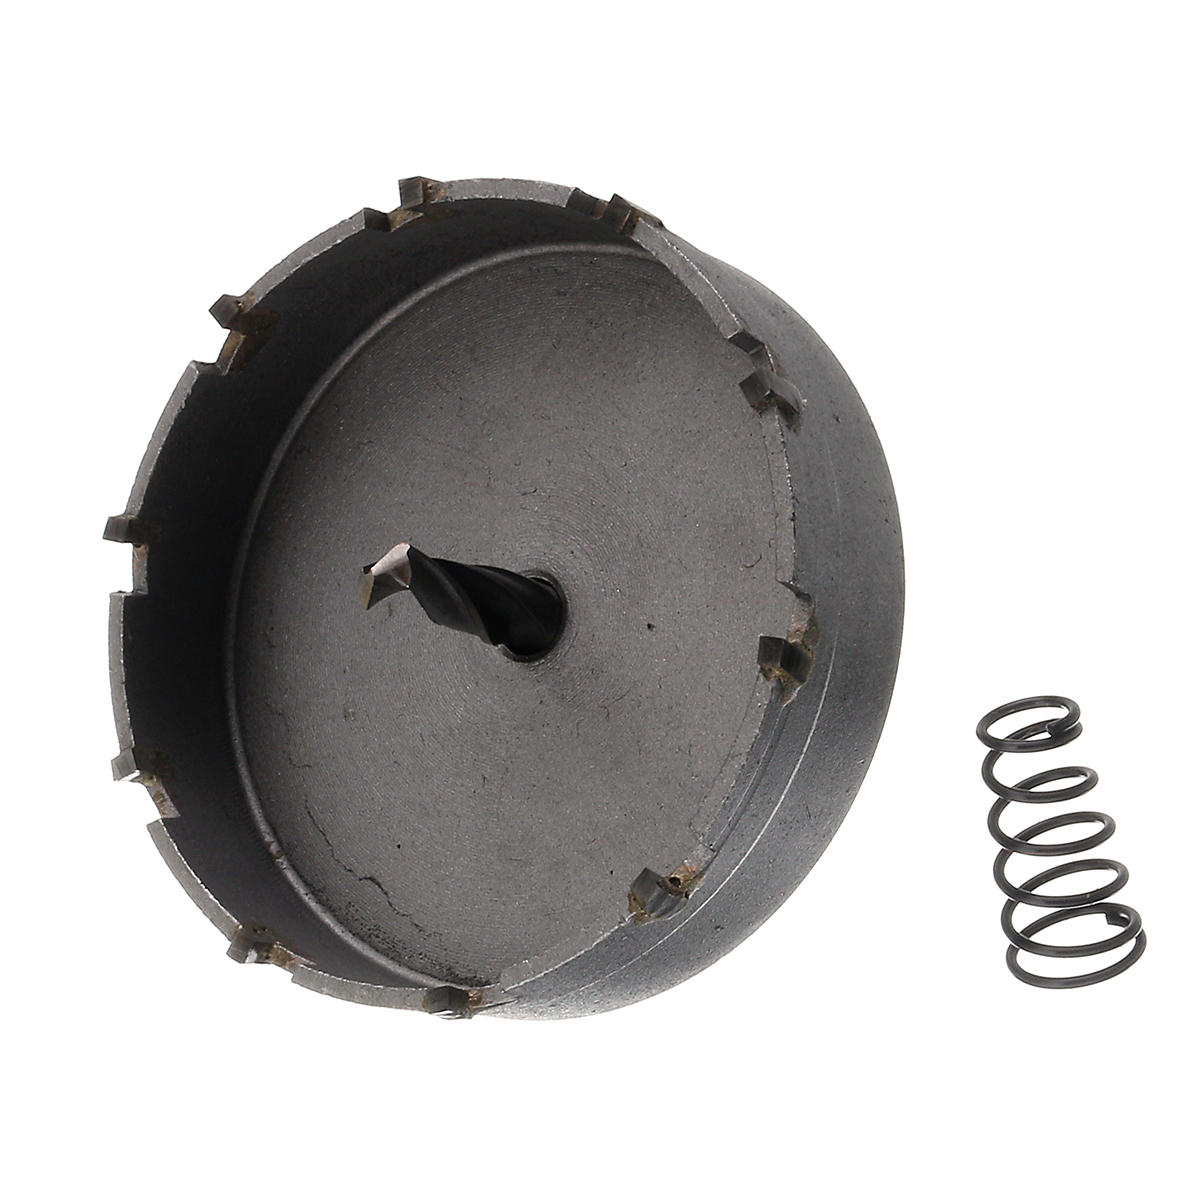 6 stuks 16-65mm tct carbide hole saw cutter boren voor roestvrij staal metaallegering: